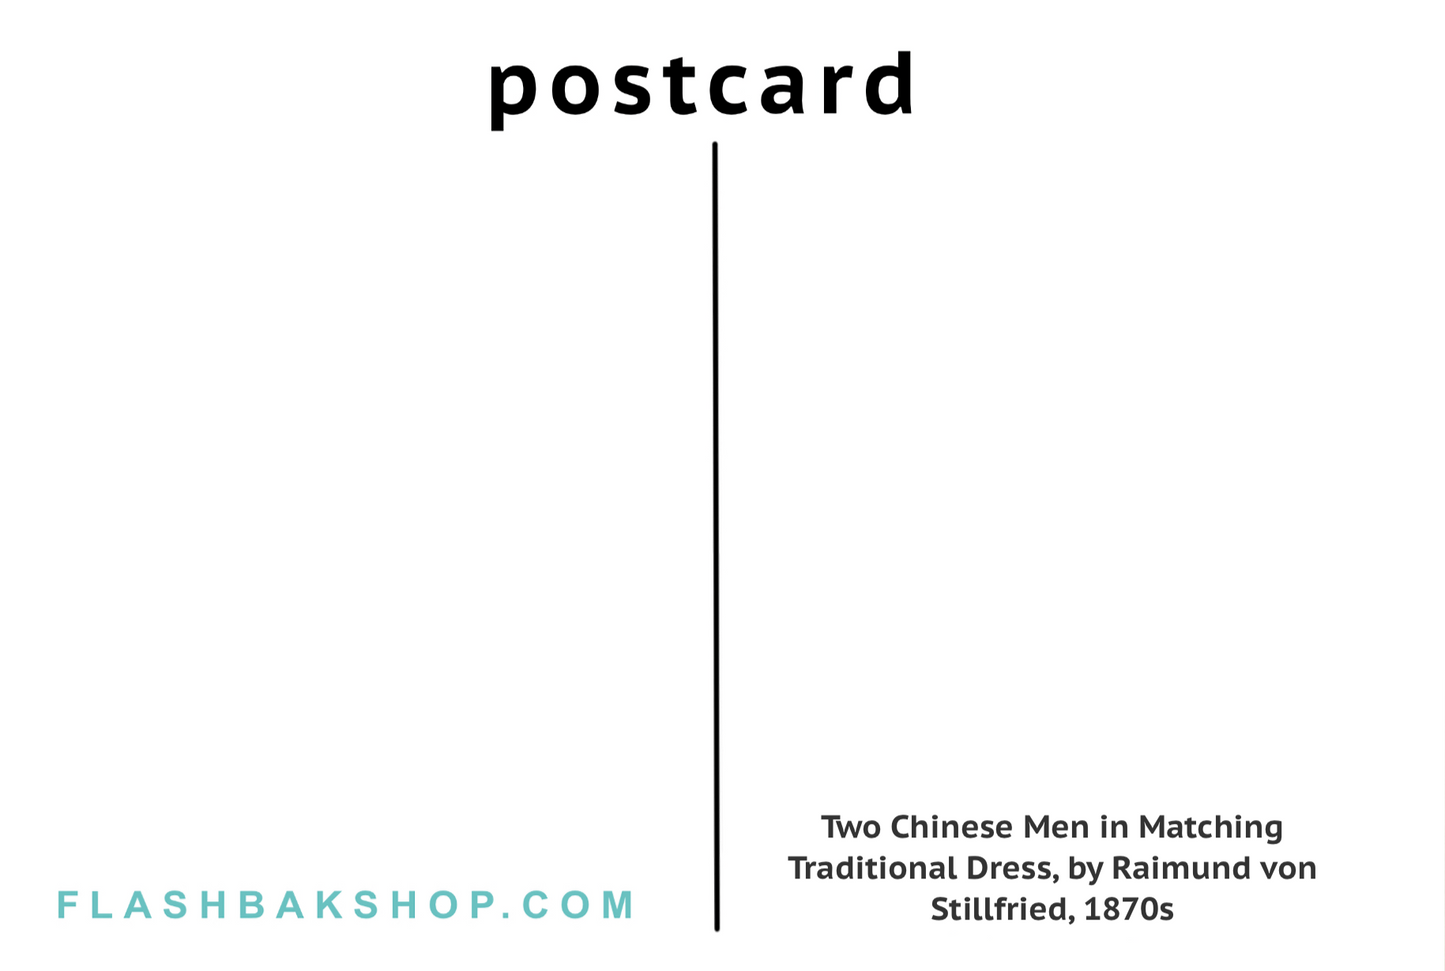 Two Chinese Men in Matching Traditional Dress by Raimund von Stillfried, 1870s - Postcard